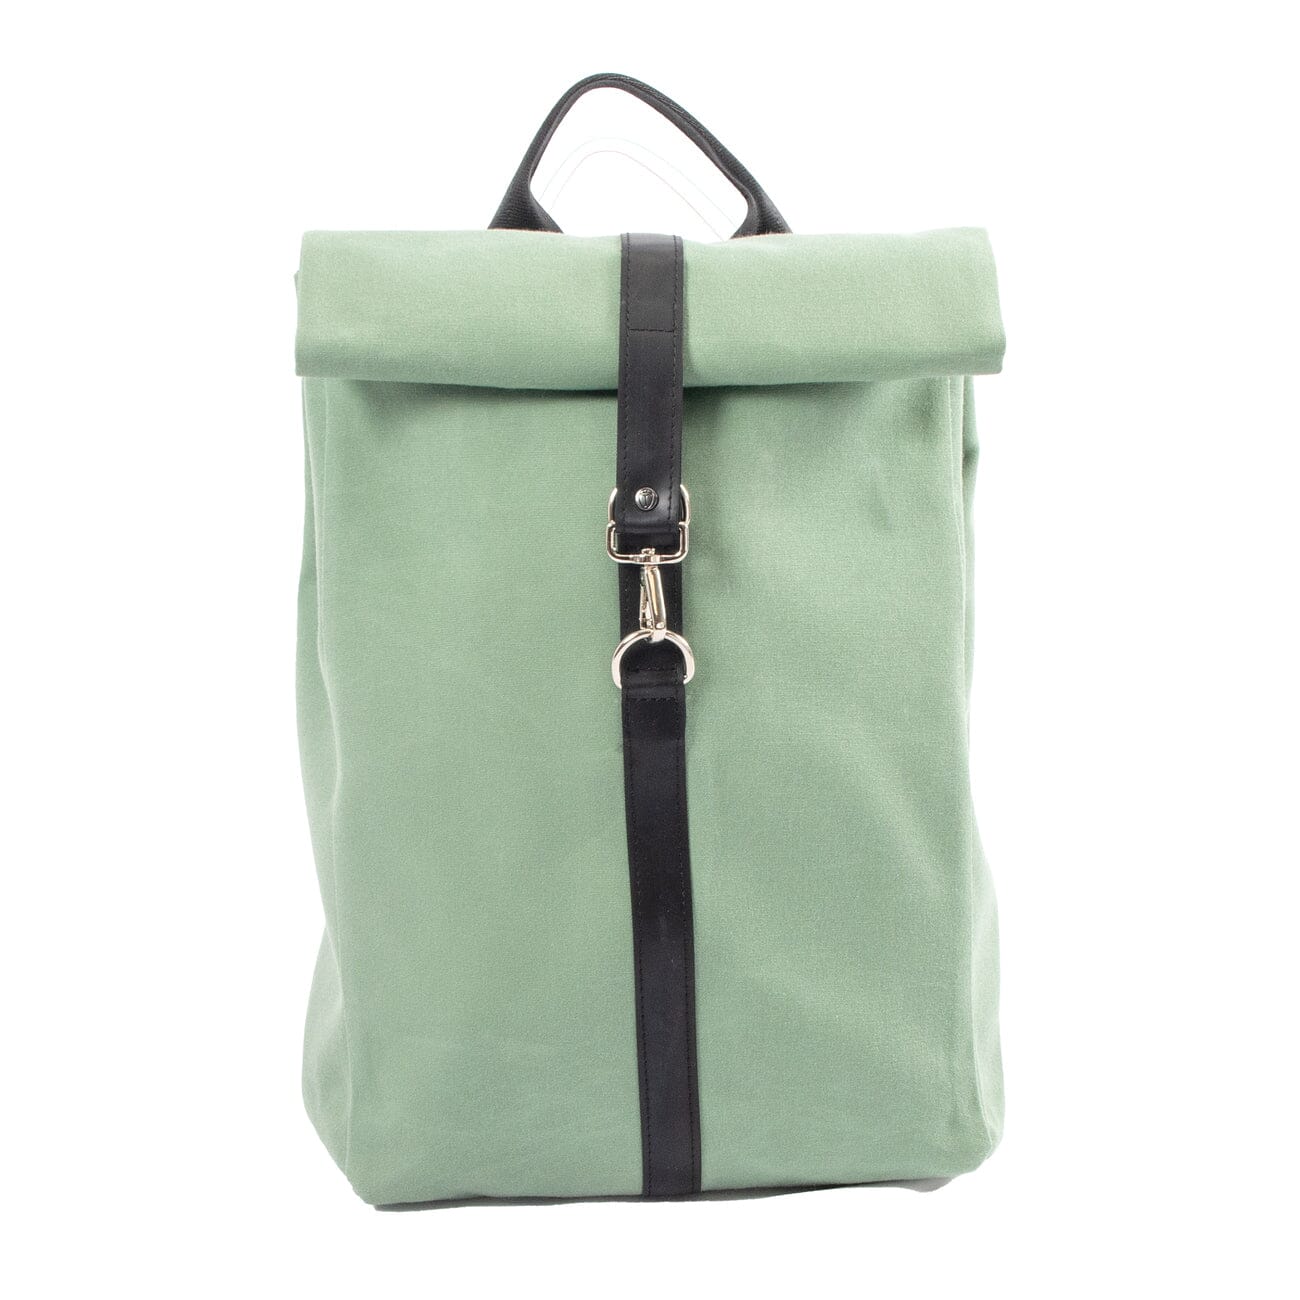 lake green sustainable laptop bag